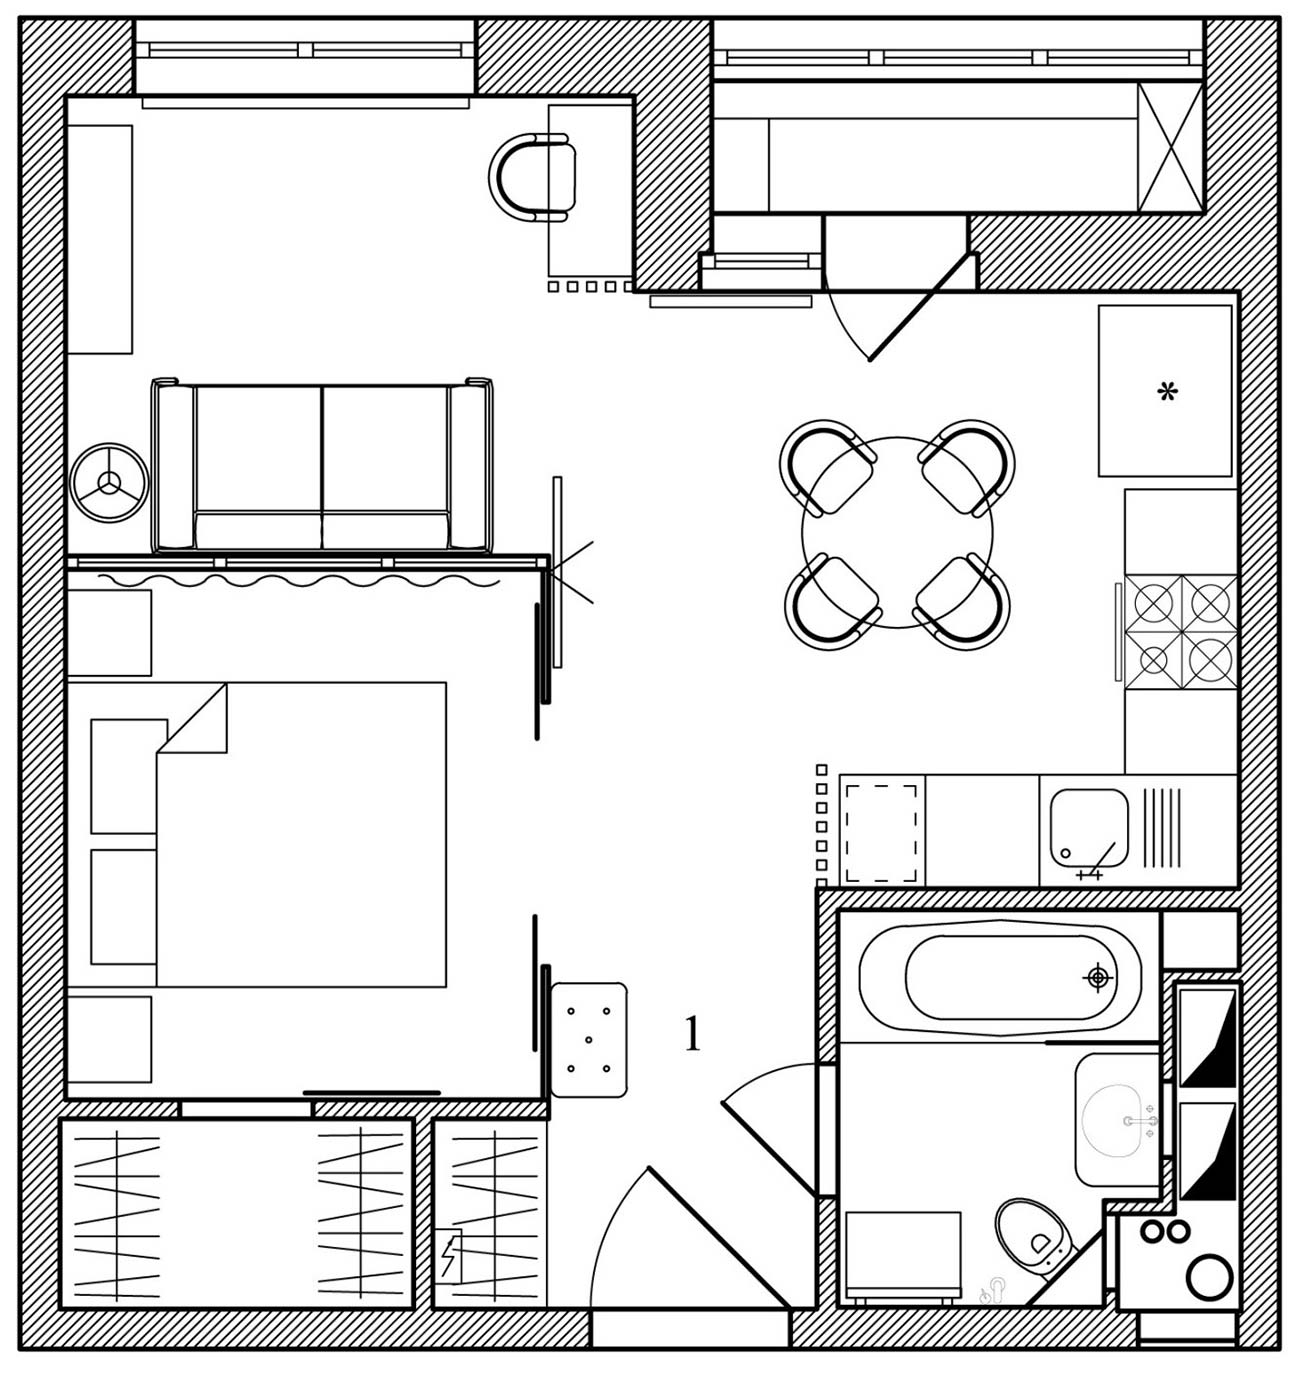 Sơ đồ thiết kế căn hộ diện tích 35m² của cặp vợ chồng son.